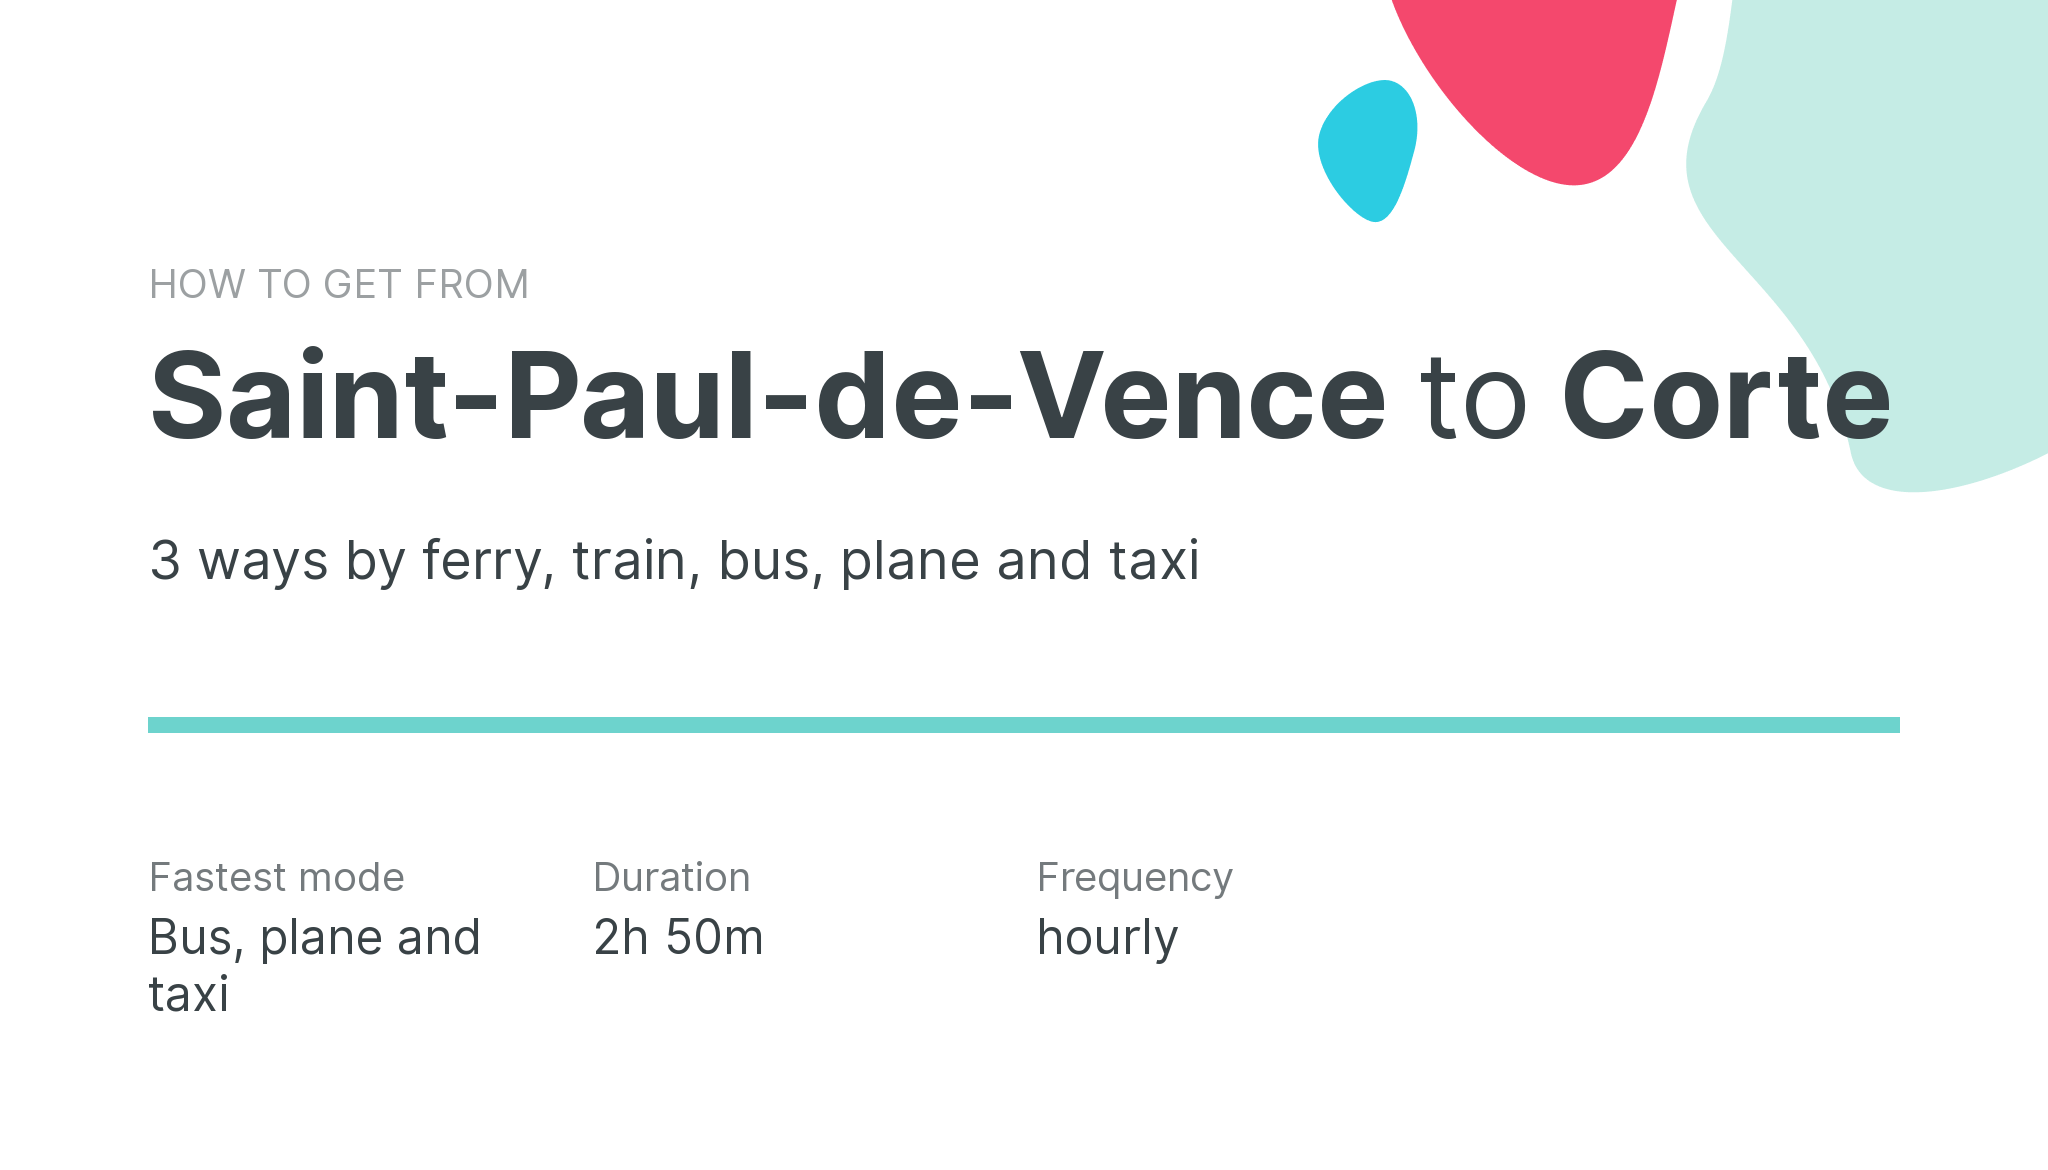 How do I get from Saint-Paul-de-Vence to Corte